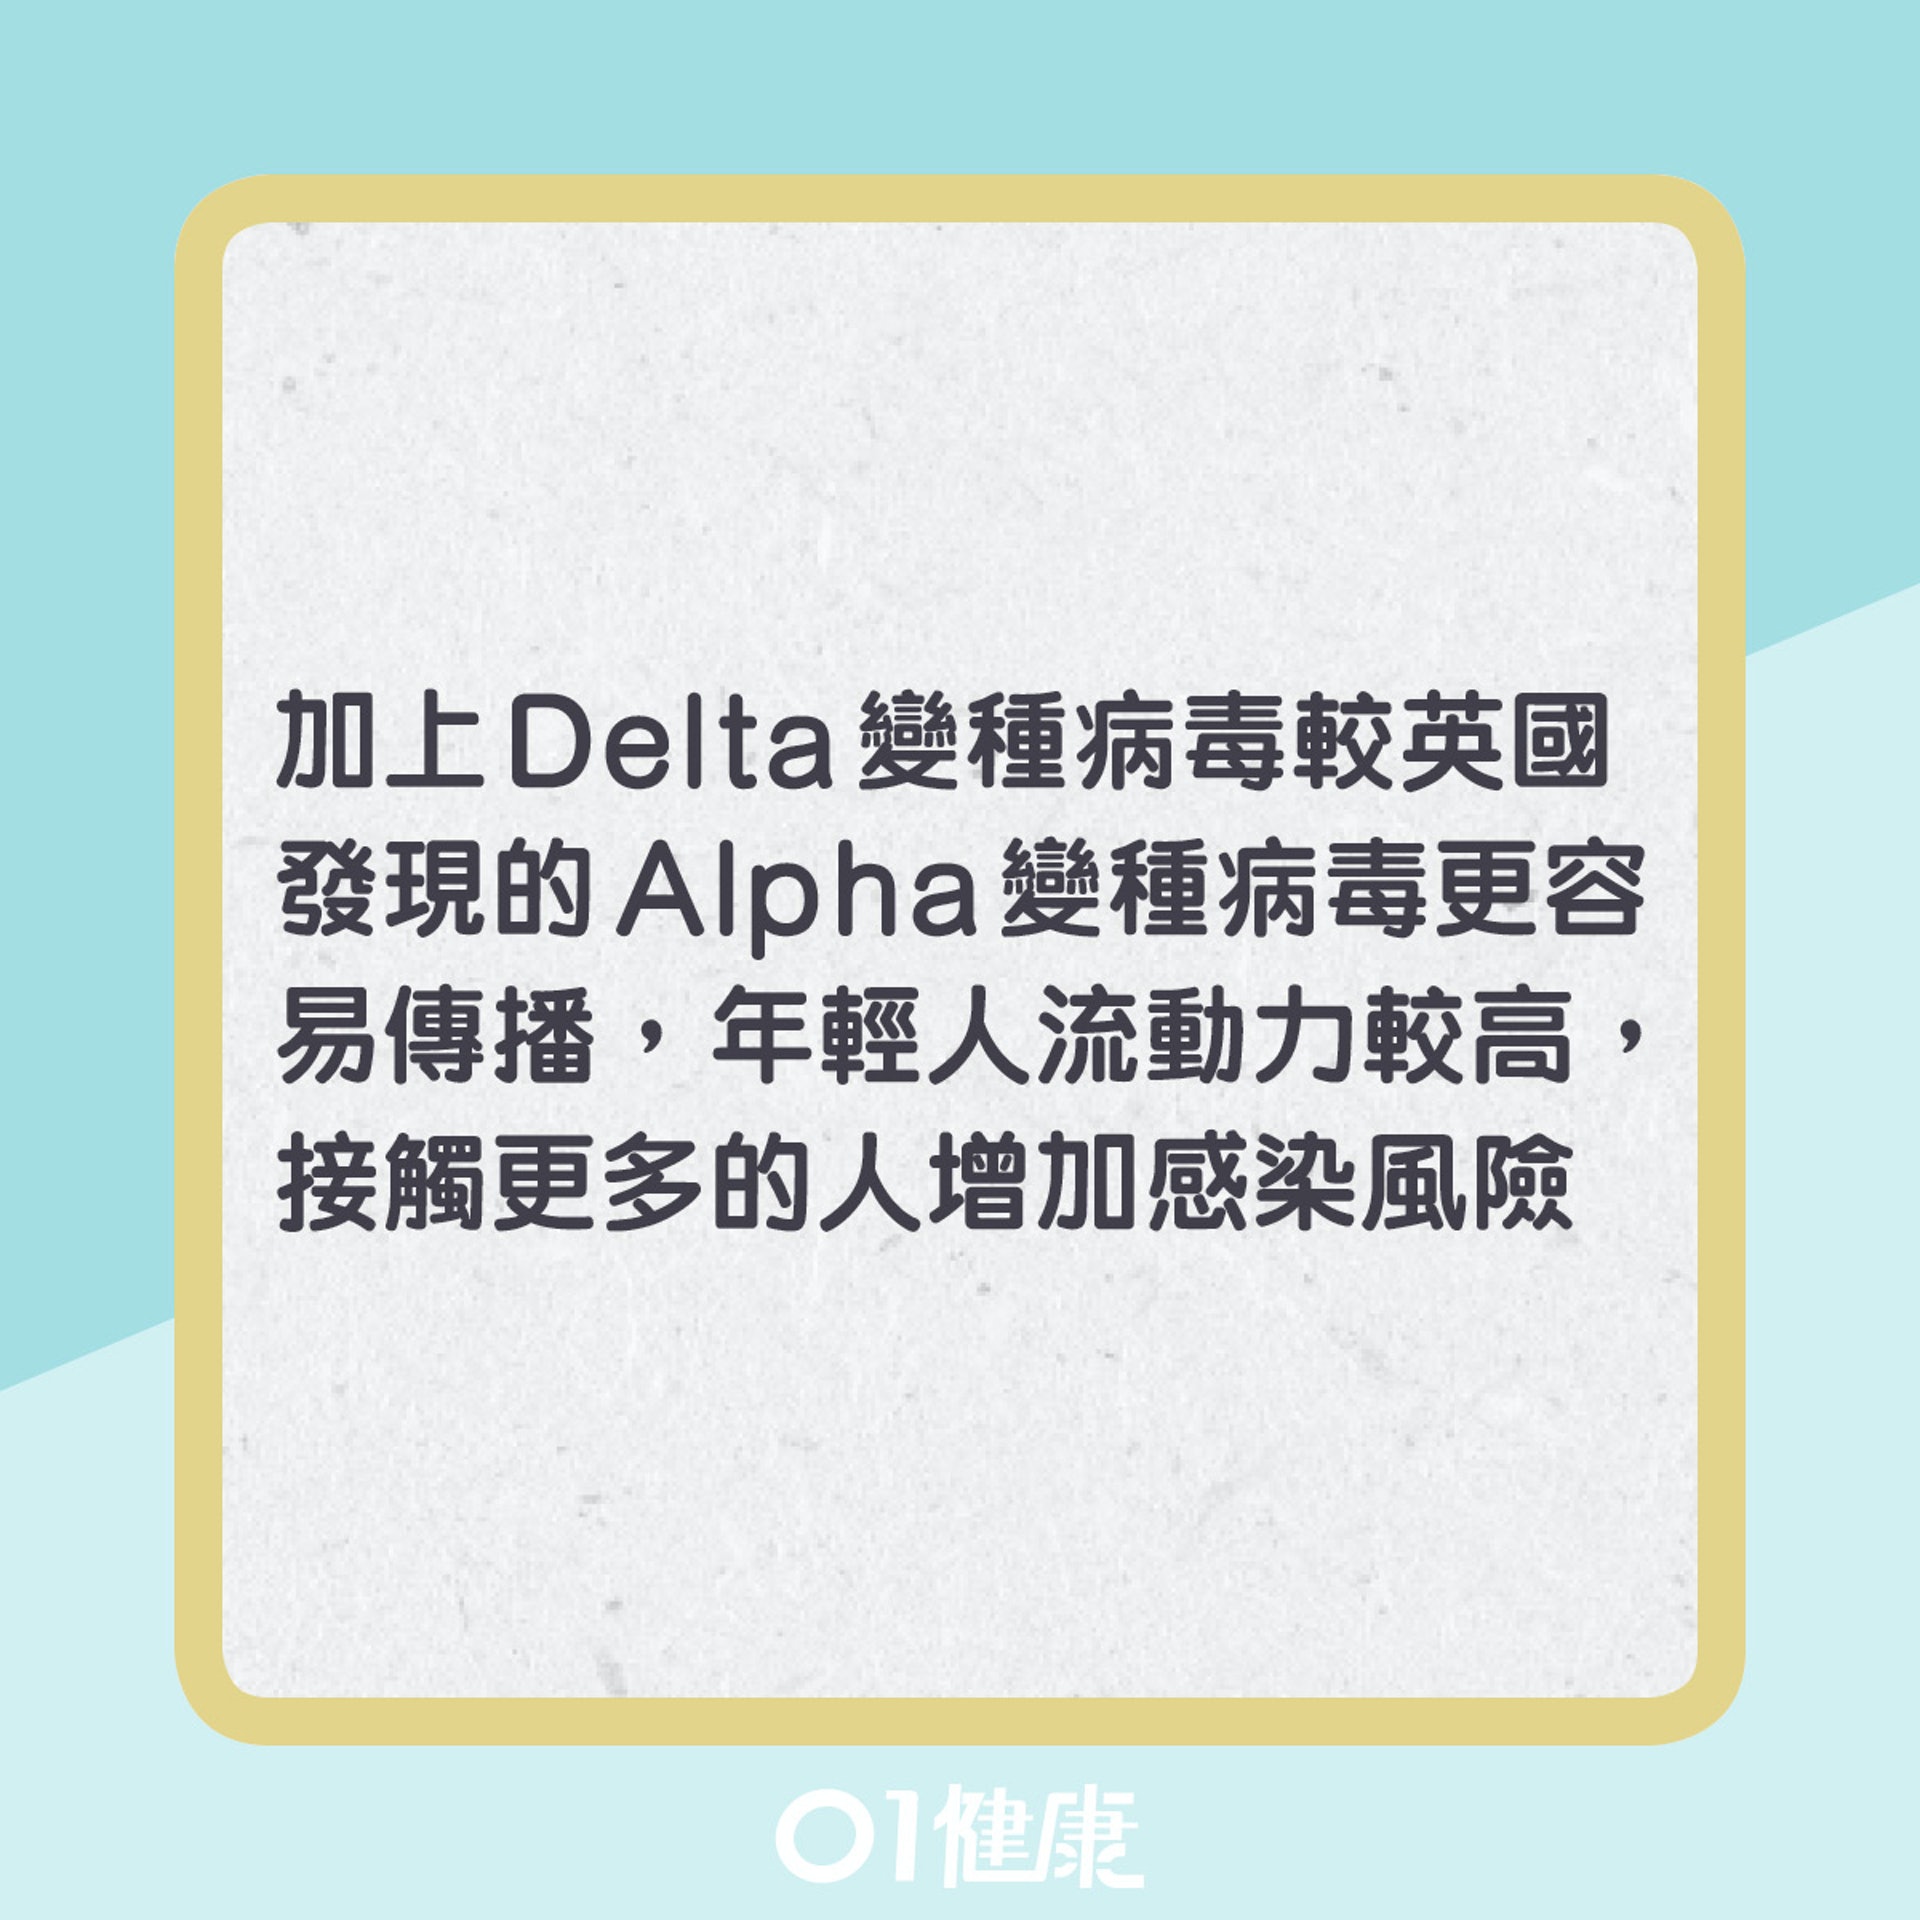 Delta變種病毒的病徵變化（01製圖）